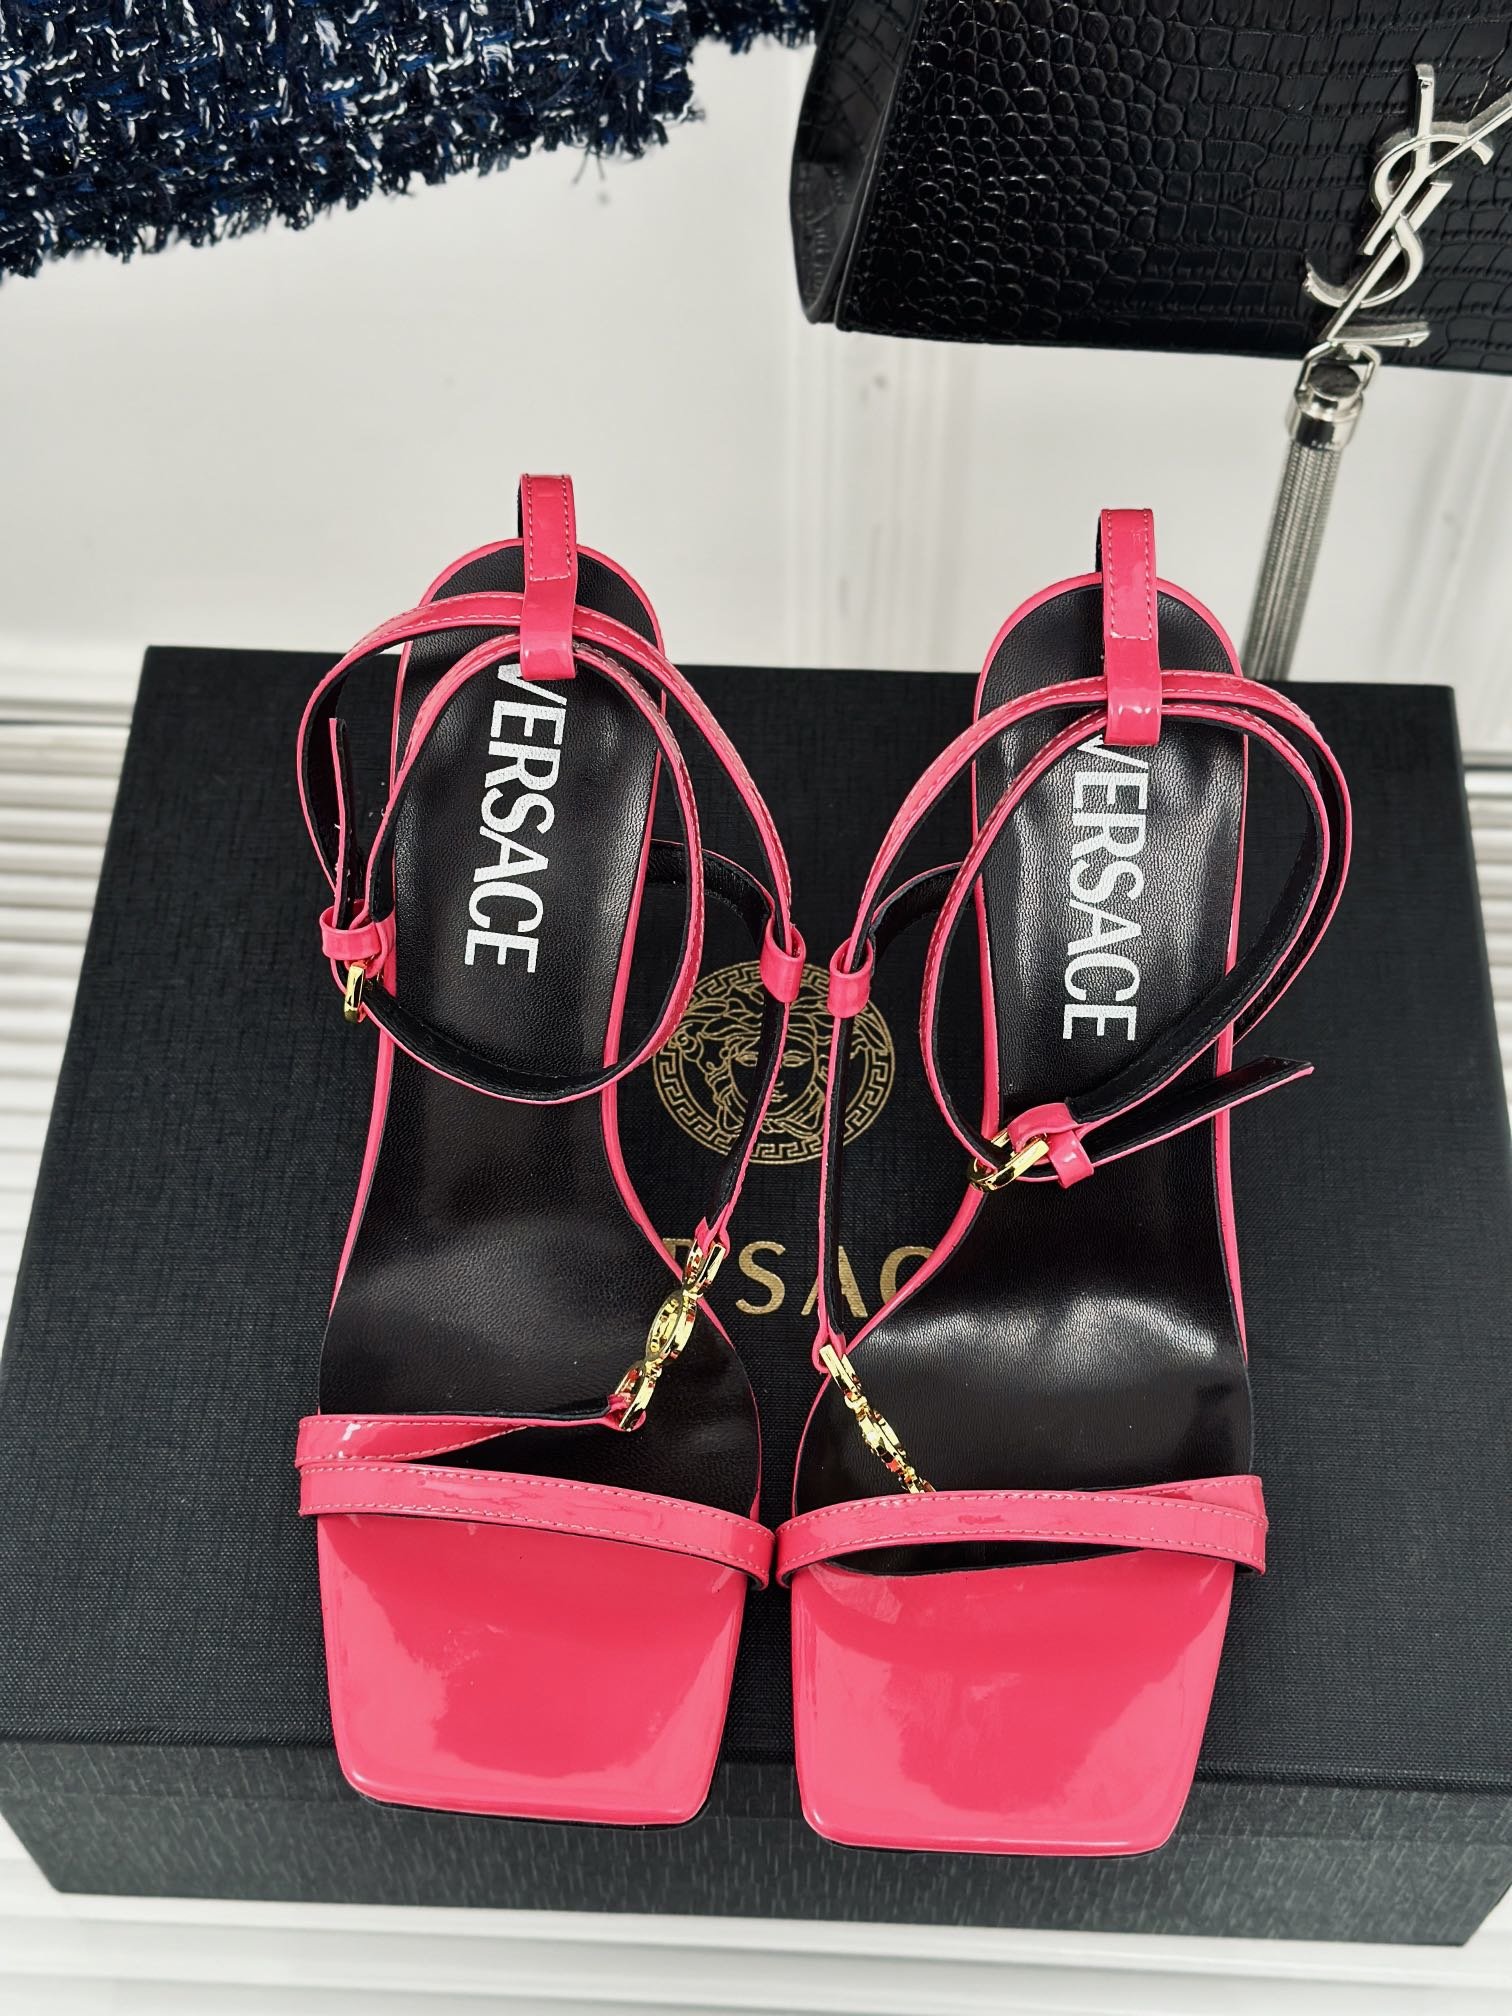 versace范思哲24S春夏新品金属美人头高跟凉鞋鞋面采用进口真丝/漆皮内里垫脚均为山羊皮跟高10.5